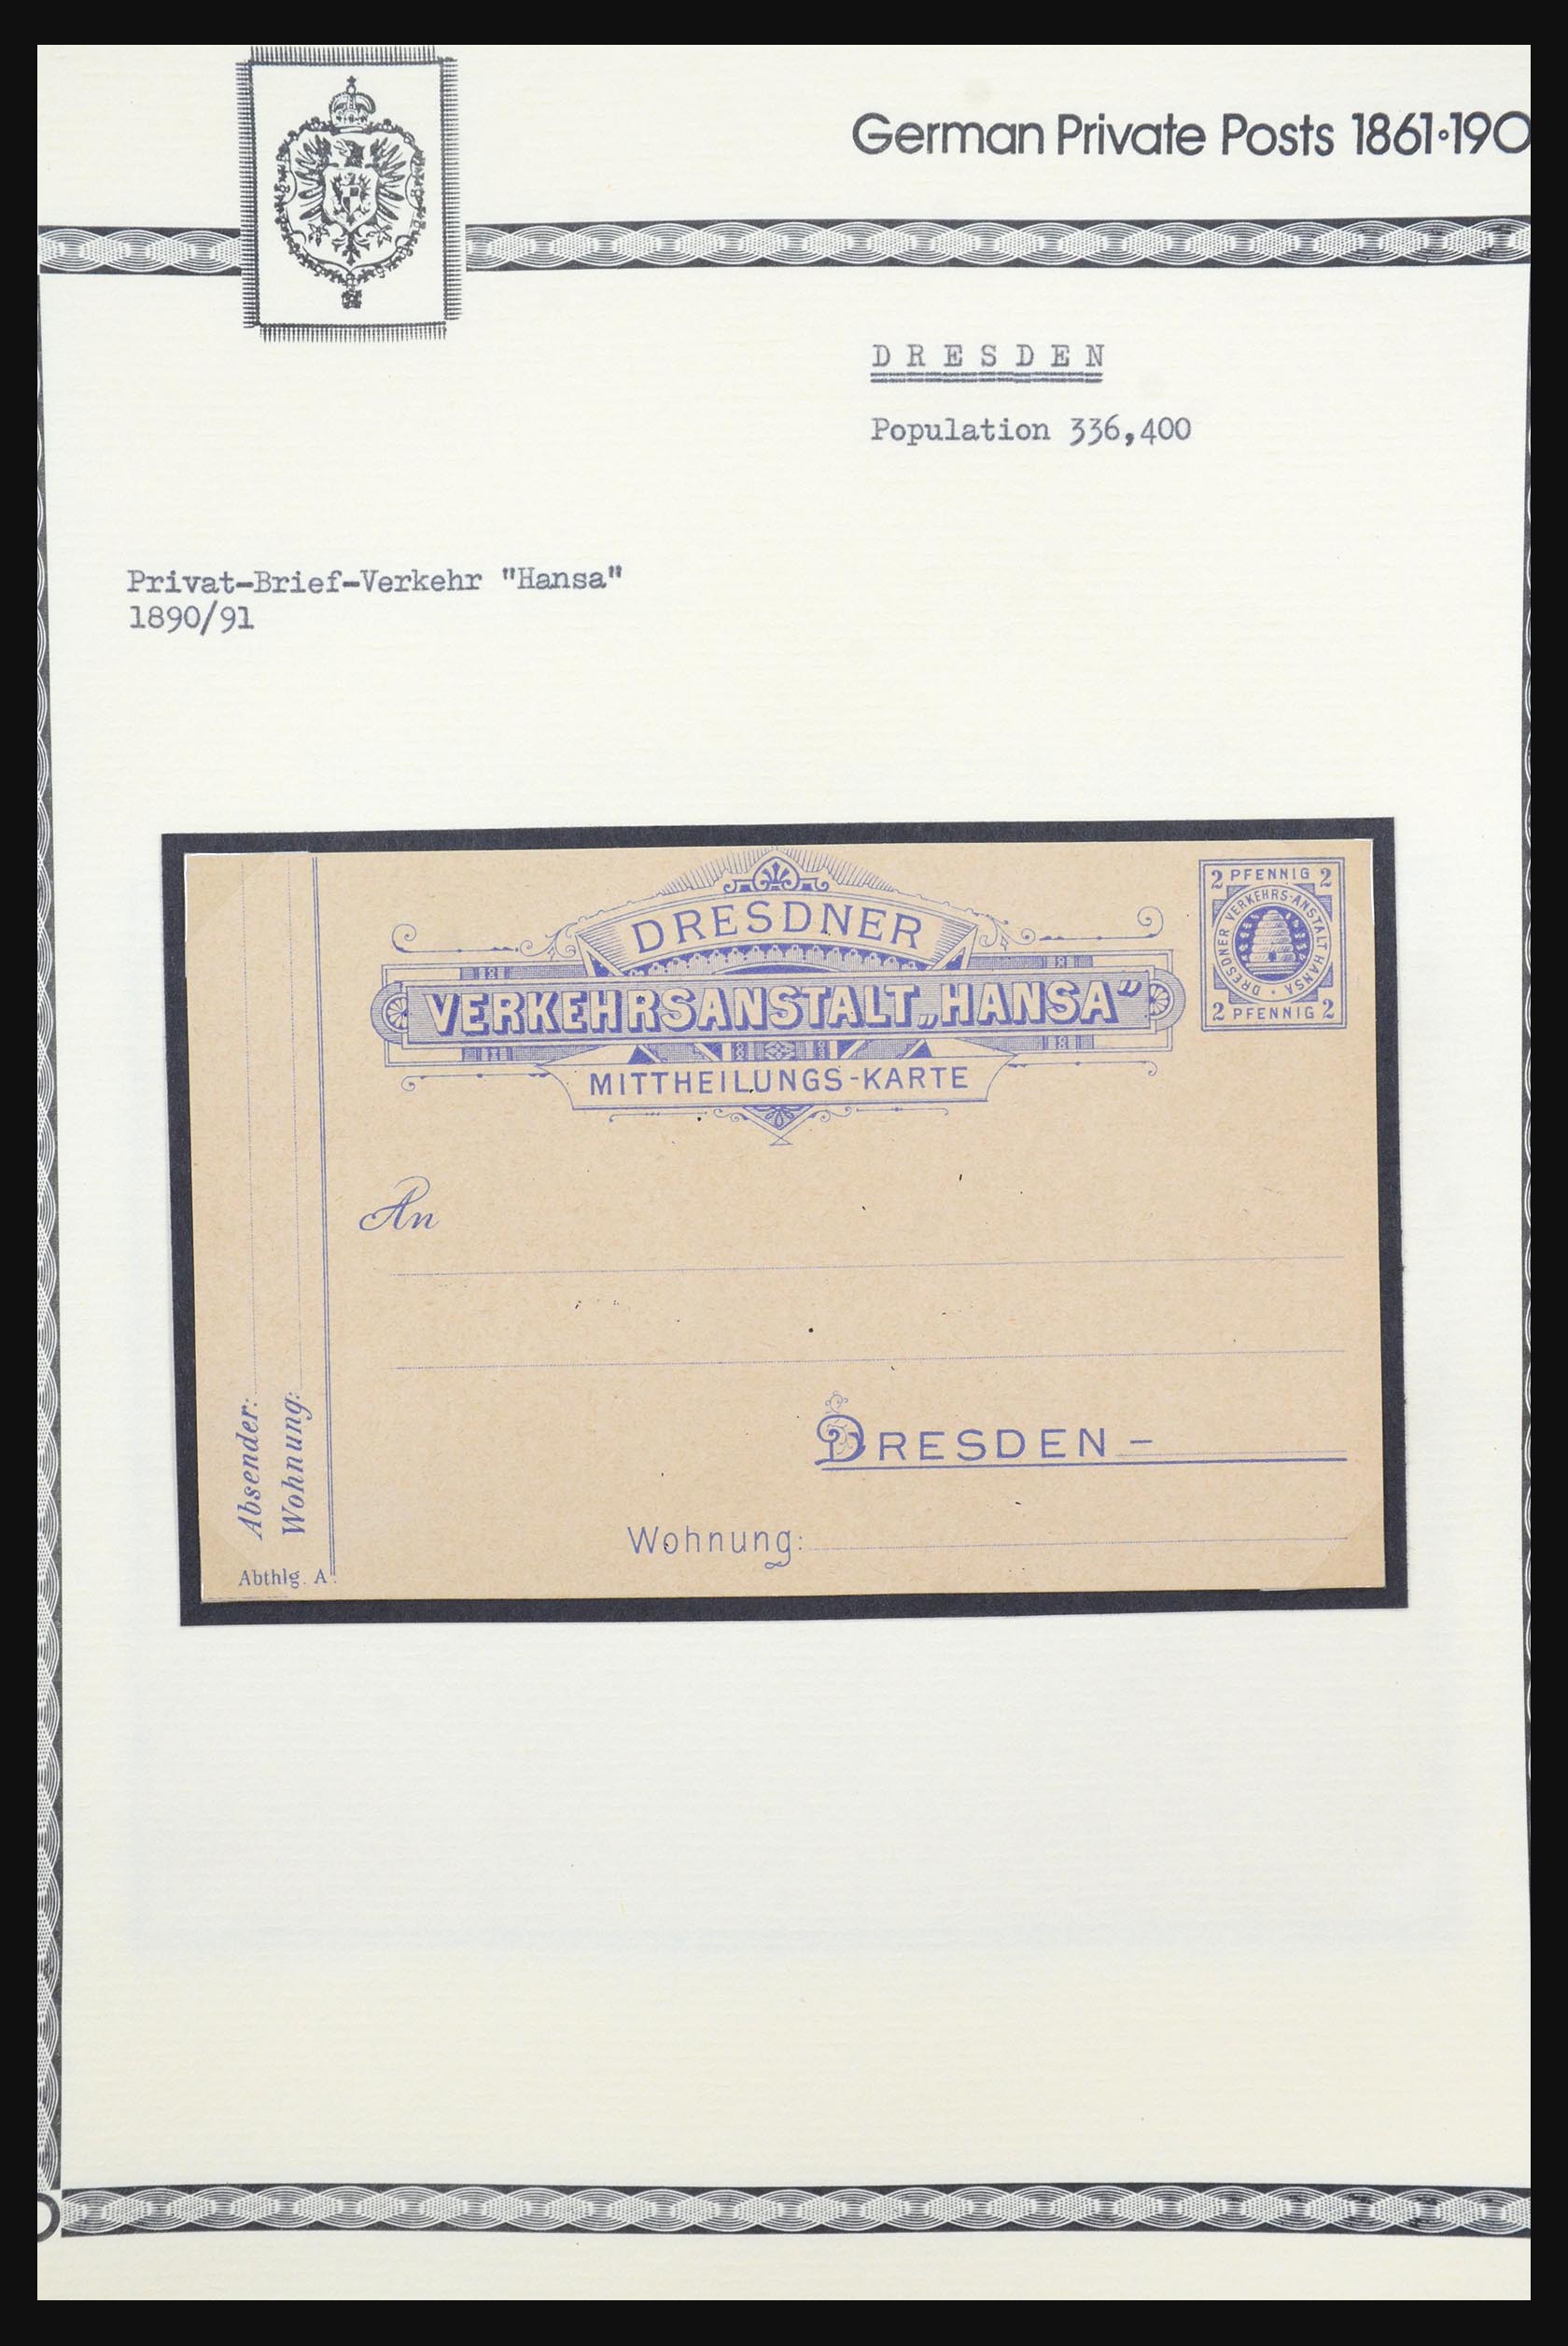 31578 058 - 31578 Germany localpost 1861-1900.